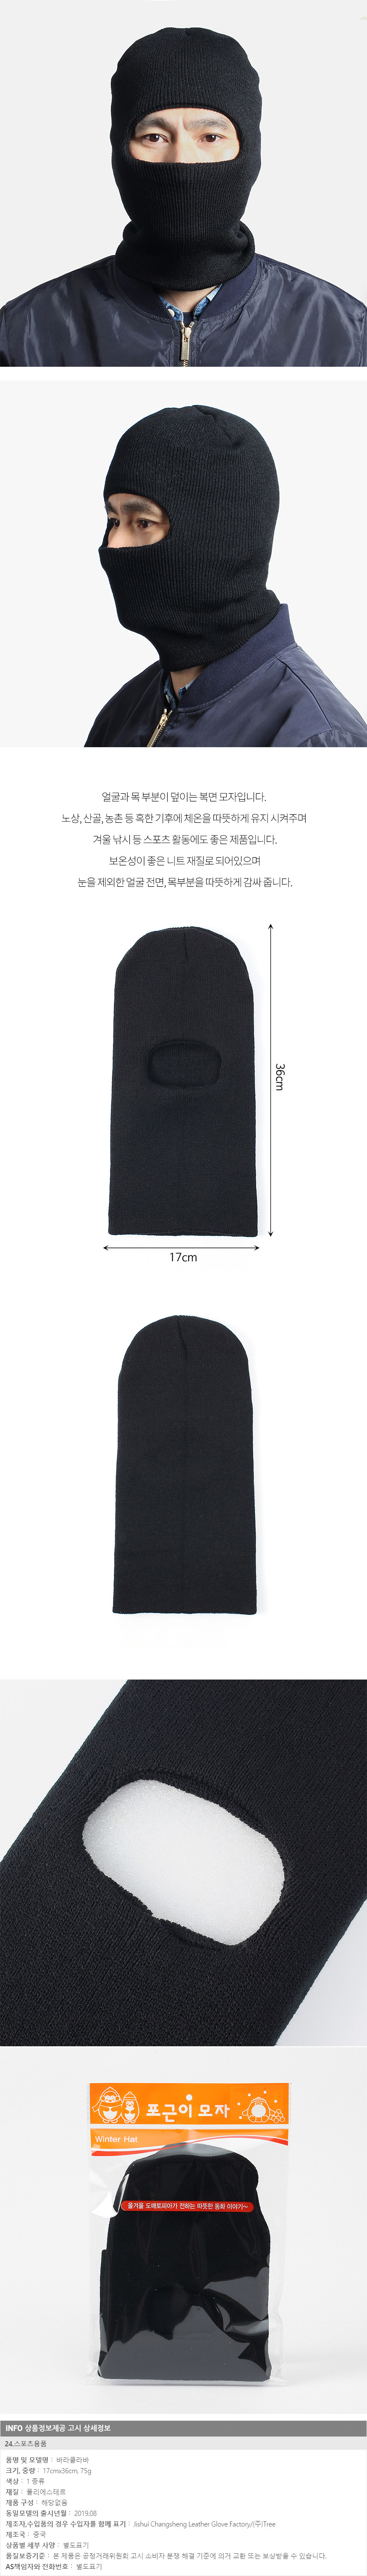 [인쇄 판촉물/행사 기념품/사은품/단체선물] 복면 방한 모자(블랙)/겨울방한용품